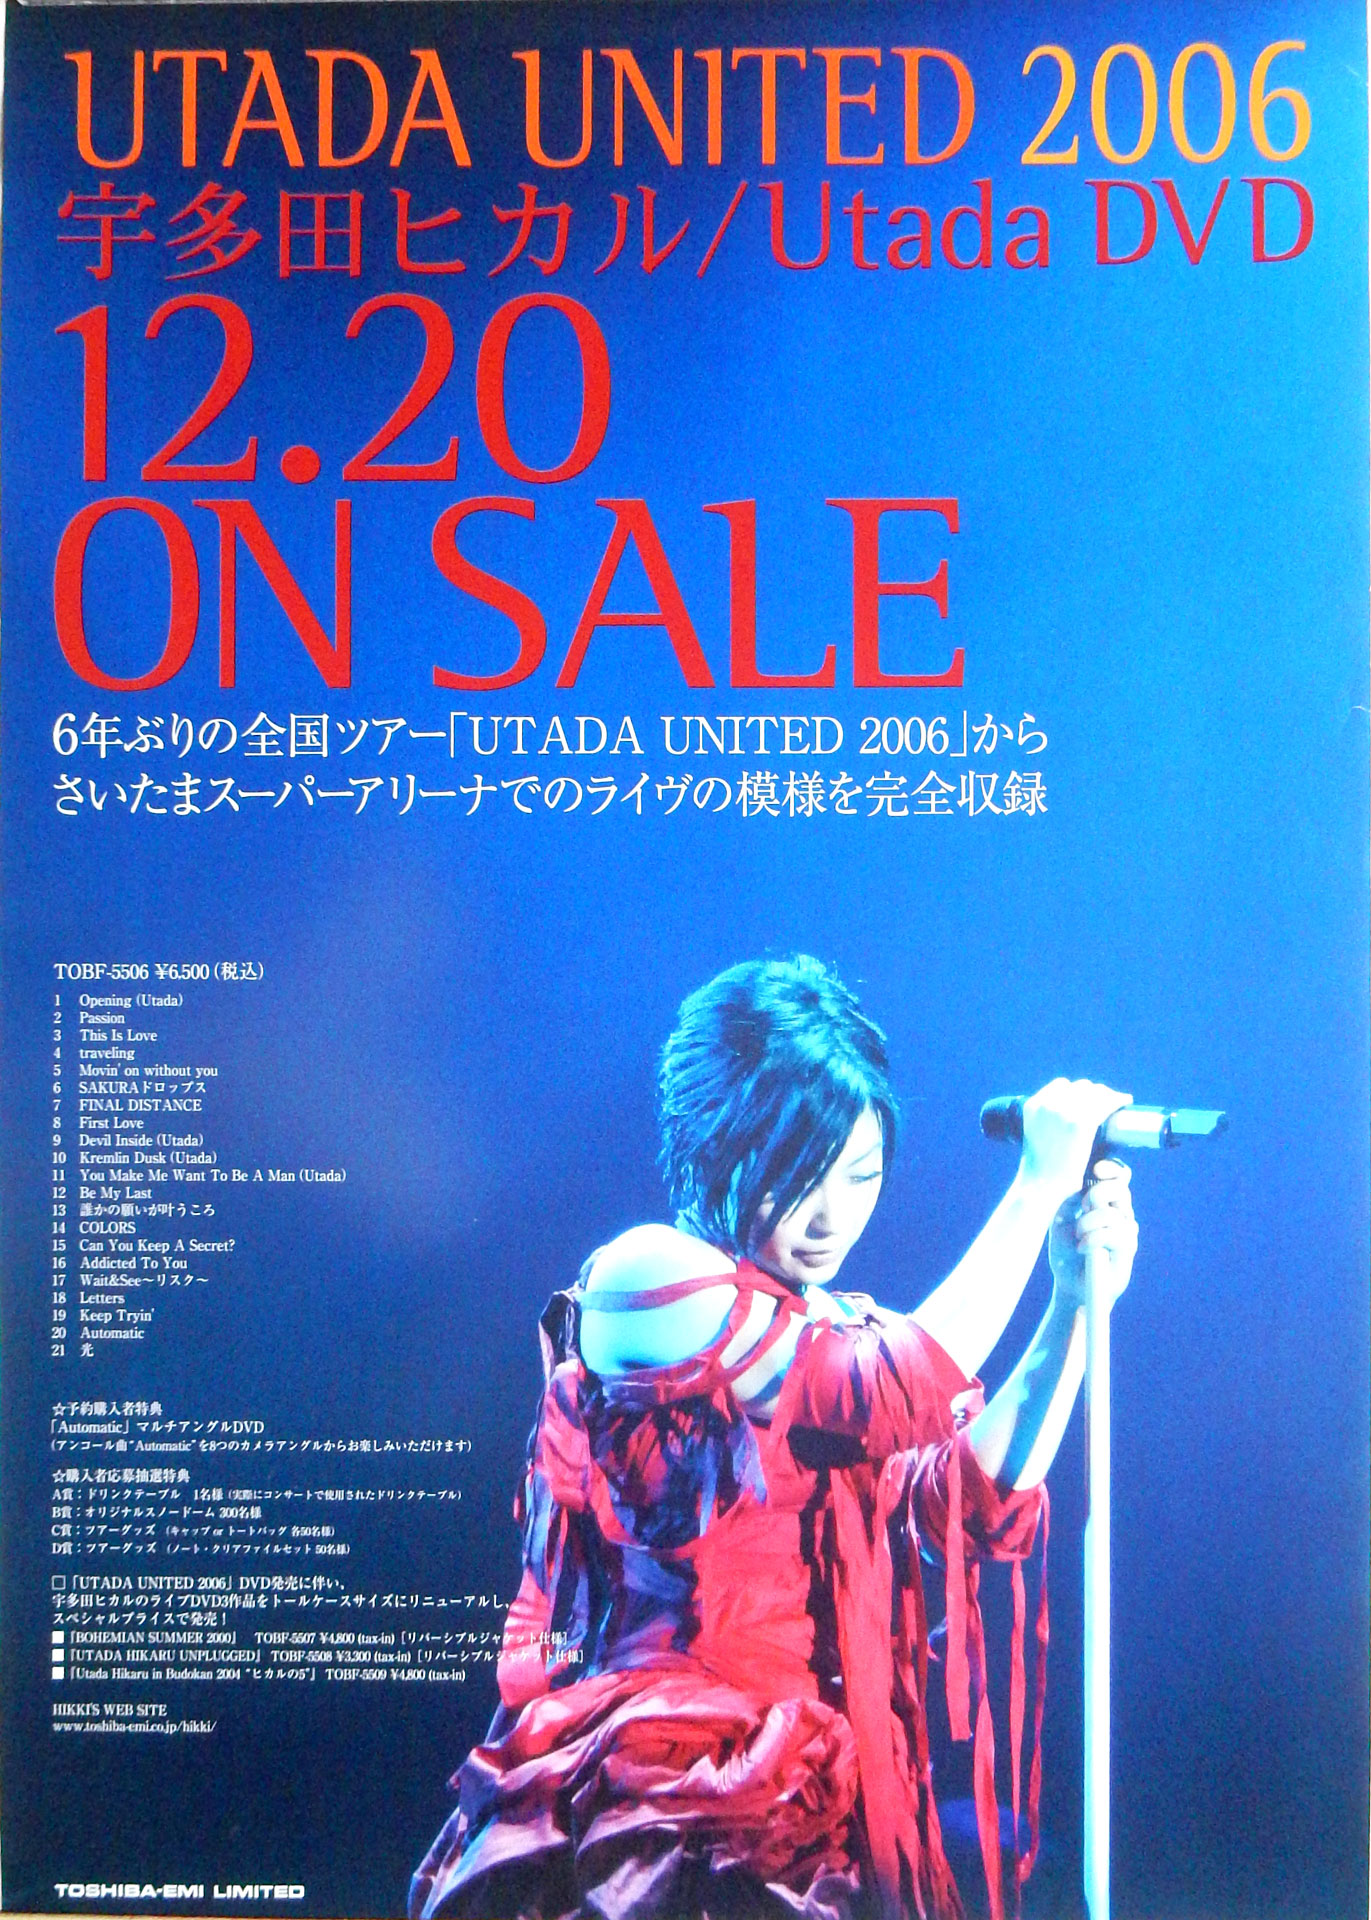 宇多田ヒカル 「UTADA UNITED 2006」のポスター